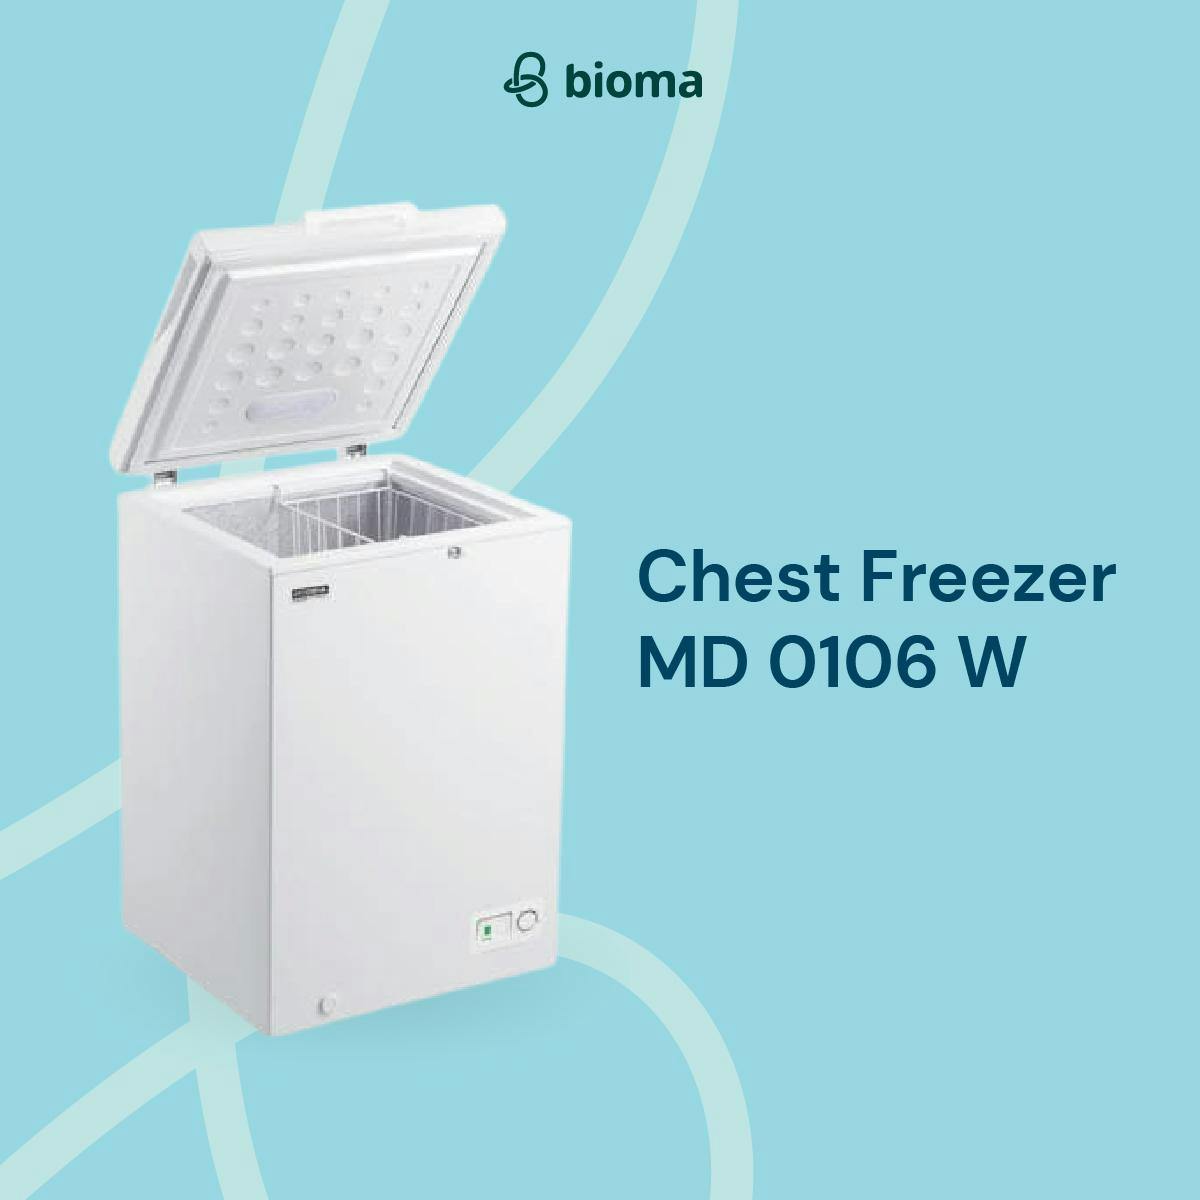 Chest Freezer MD 0106 W